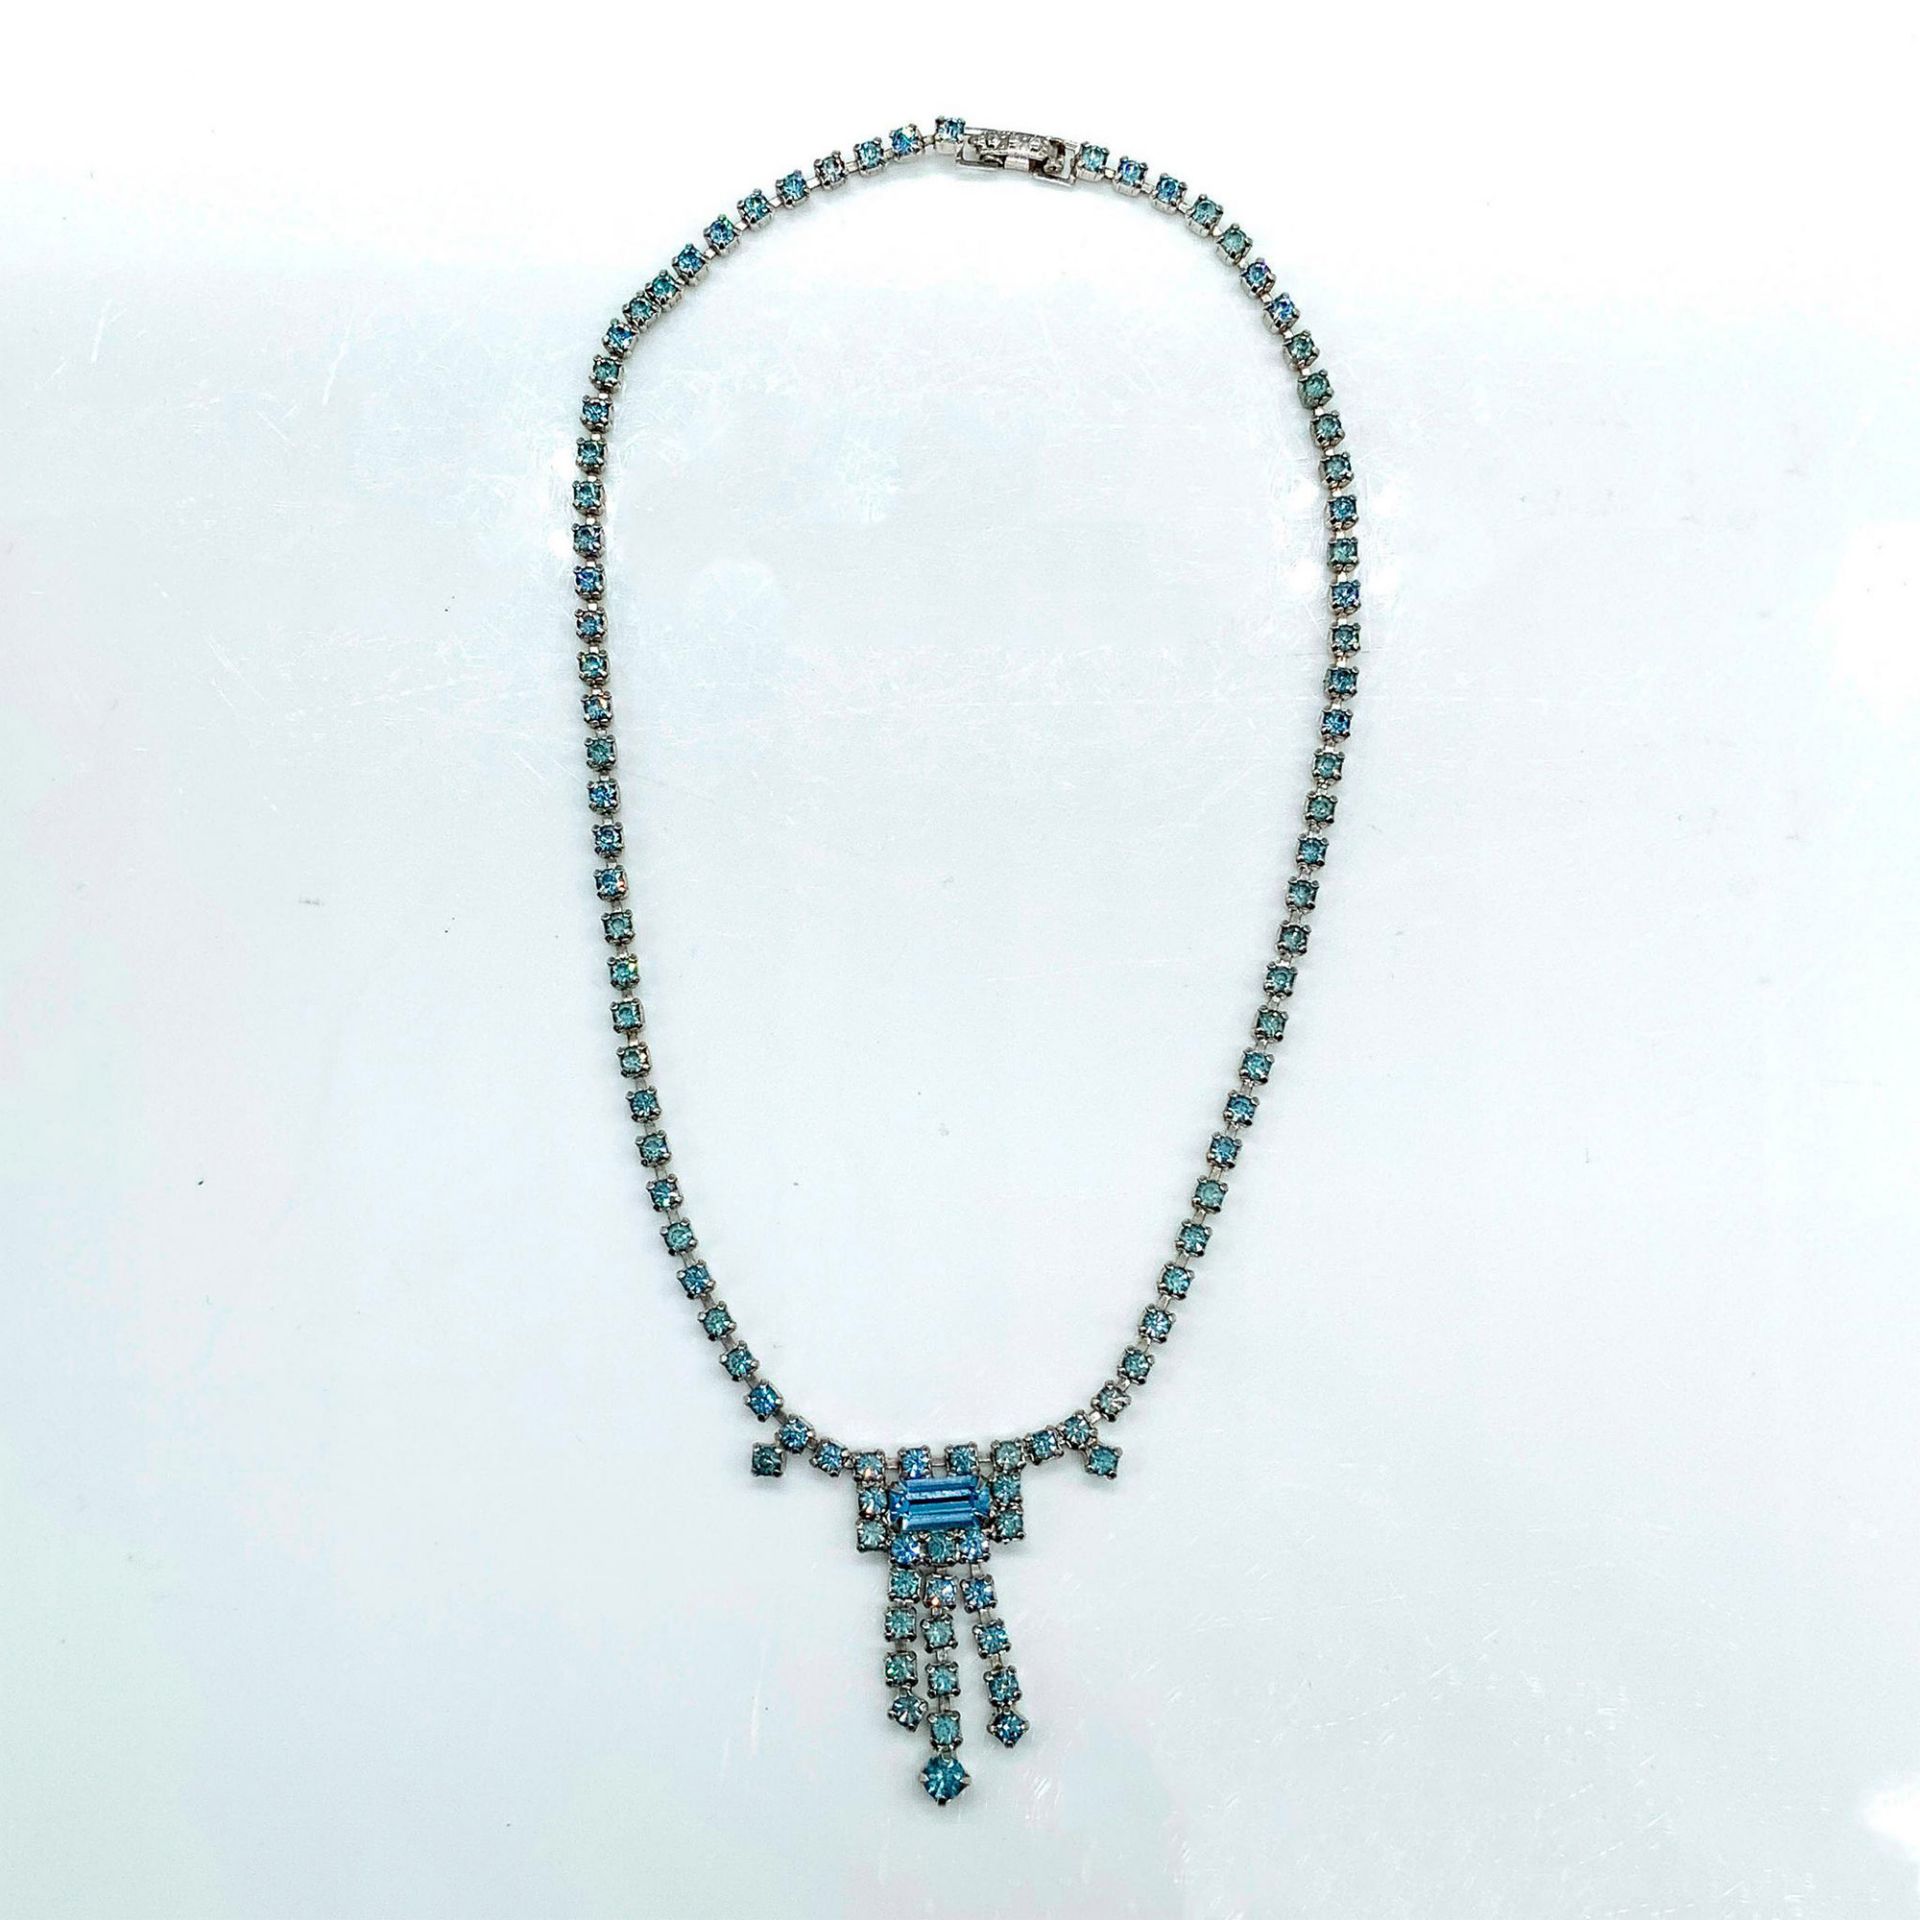 Art Deco Blue Rhinestone Necklace - Image 2 of 2